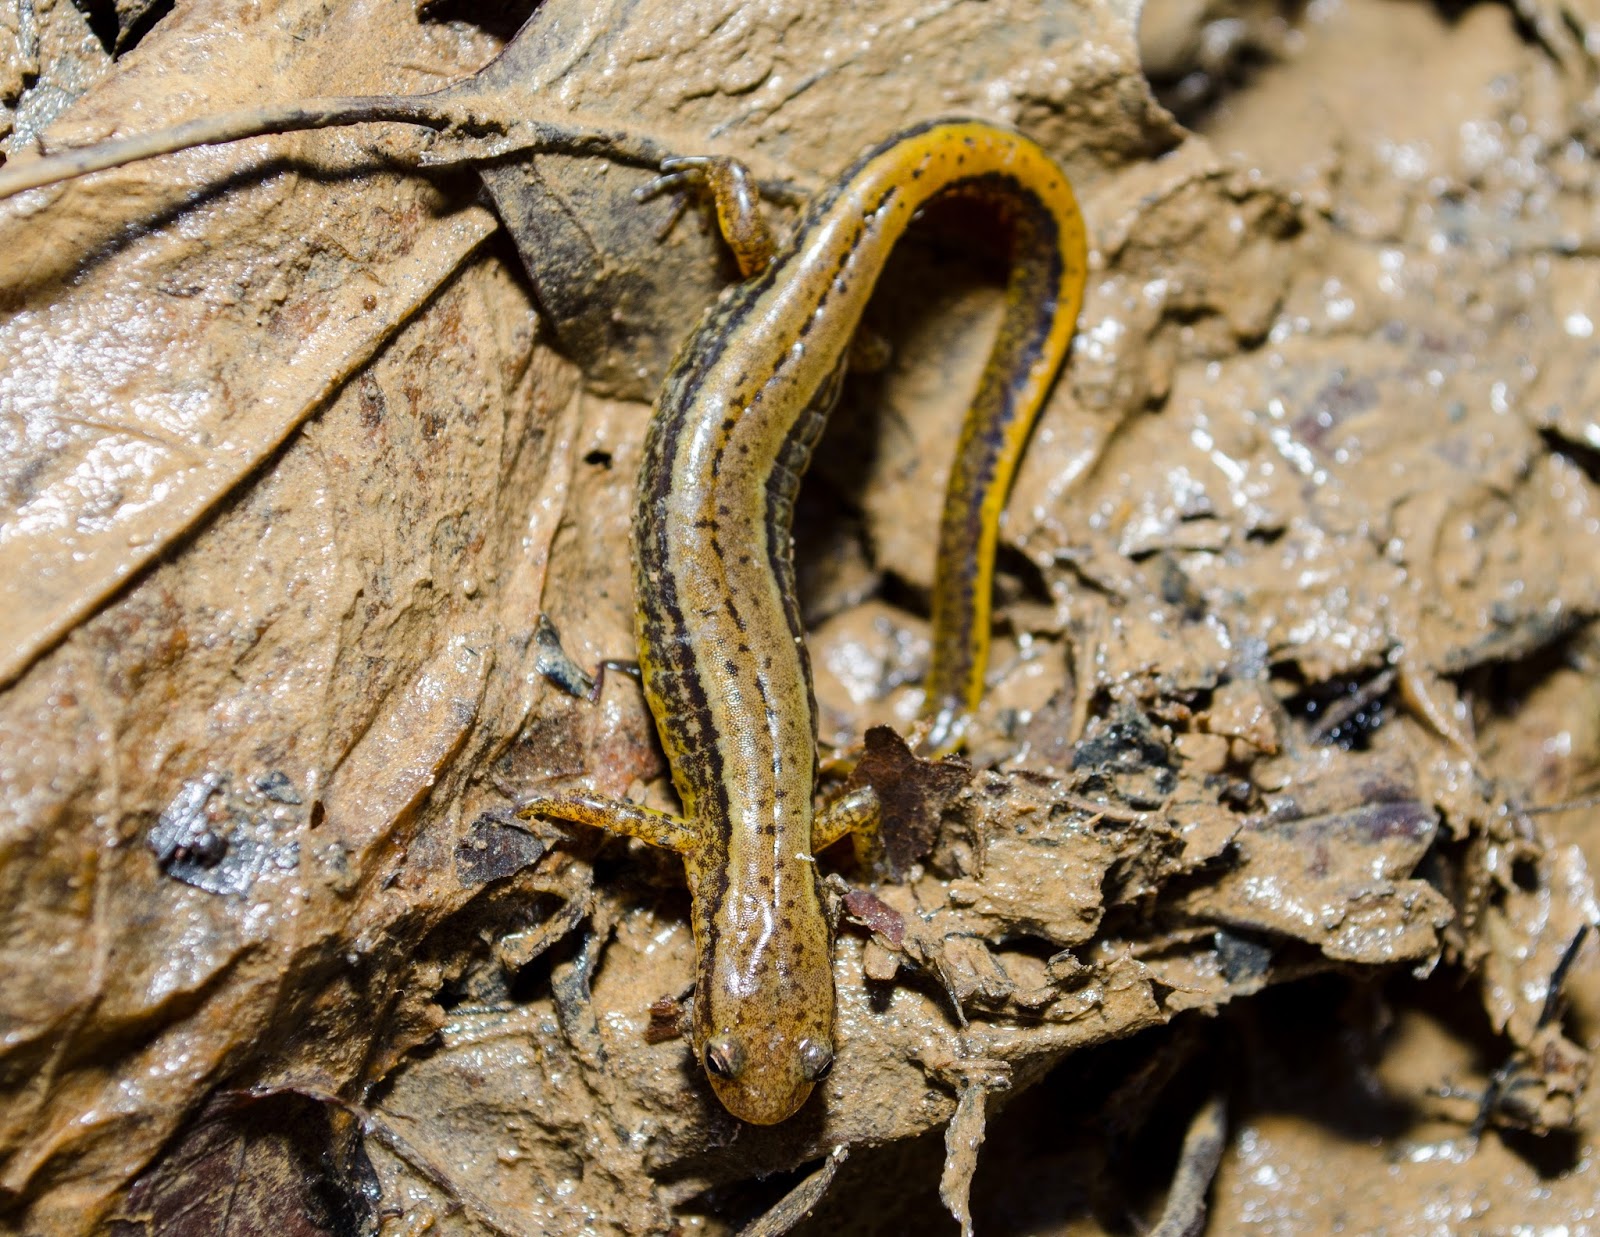 Southern Two-Lined Salamander, Eurycea cirrigera